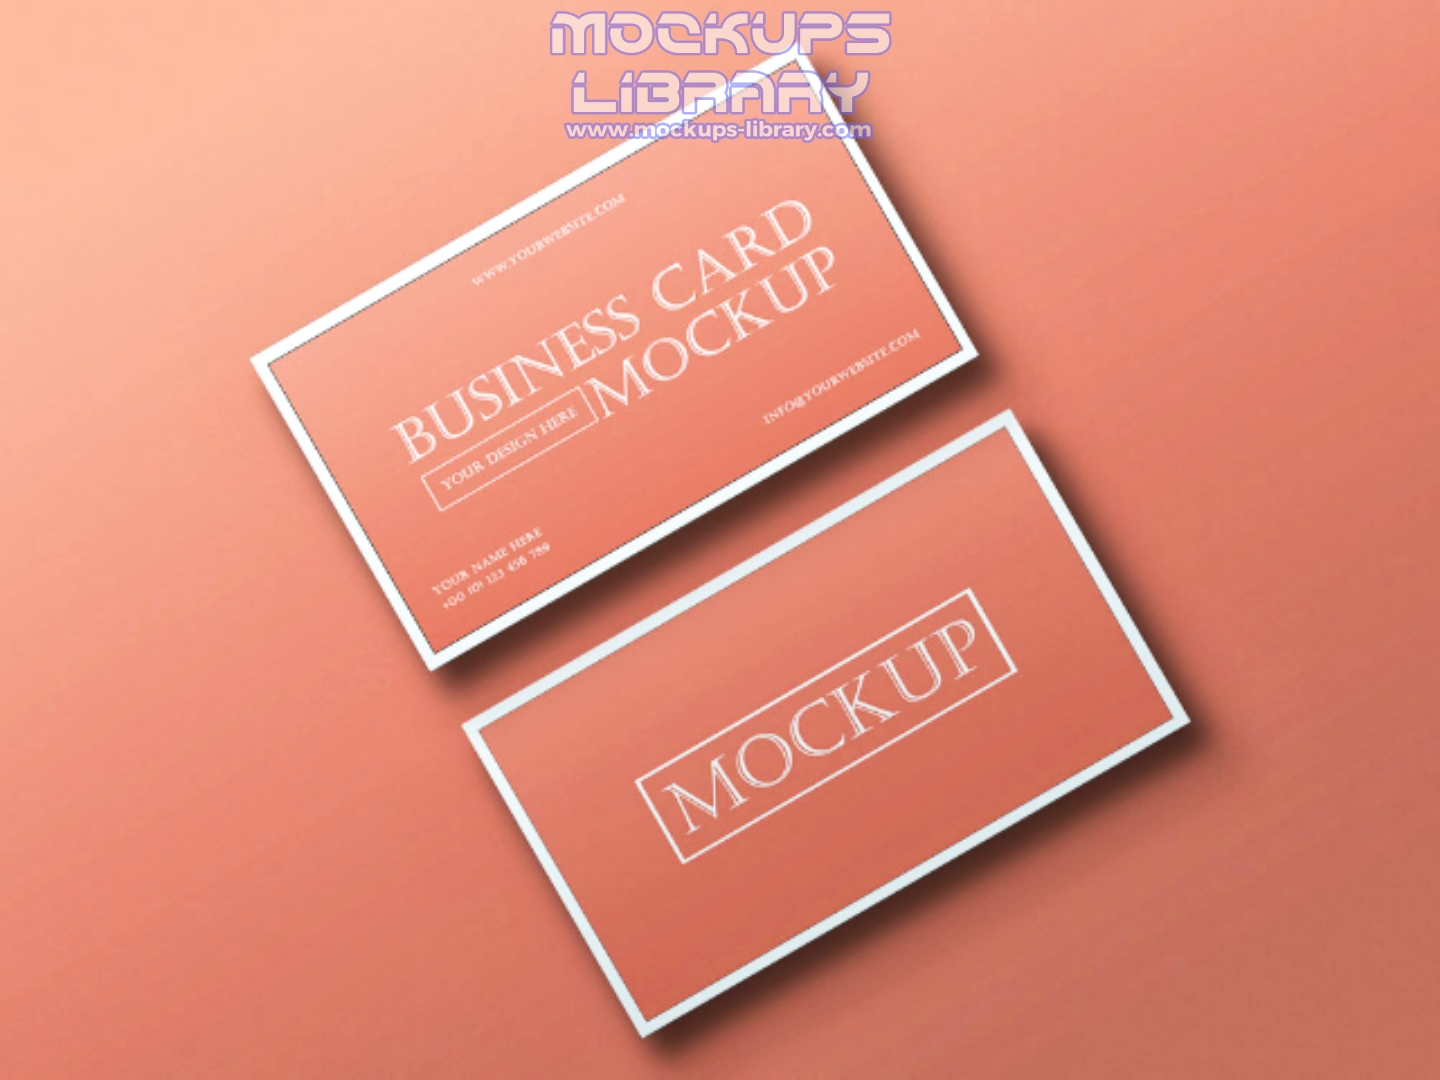 Elegant Business Card Mockup PSD